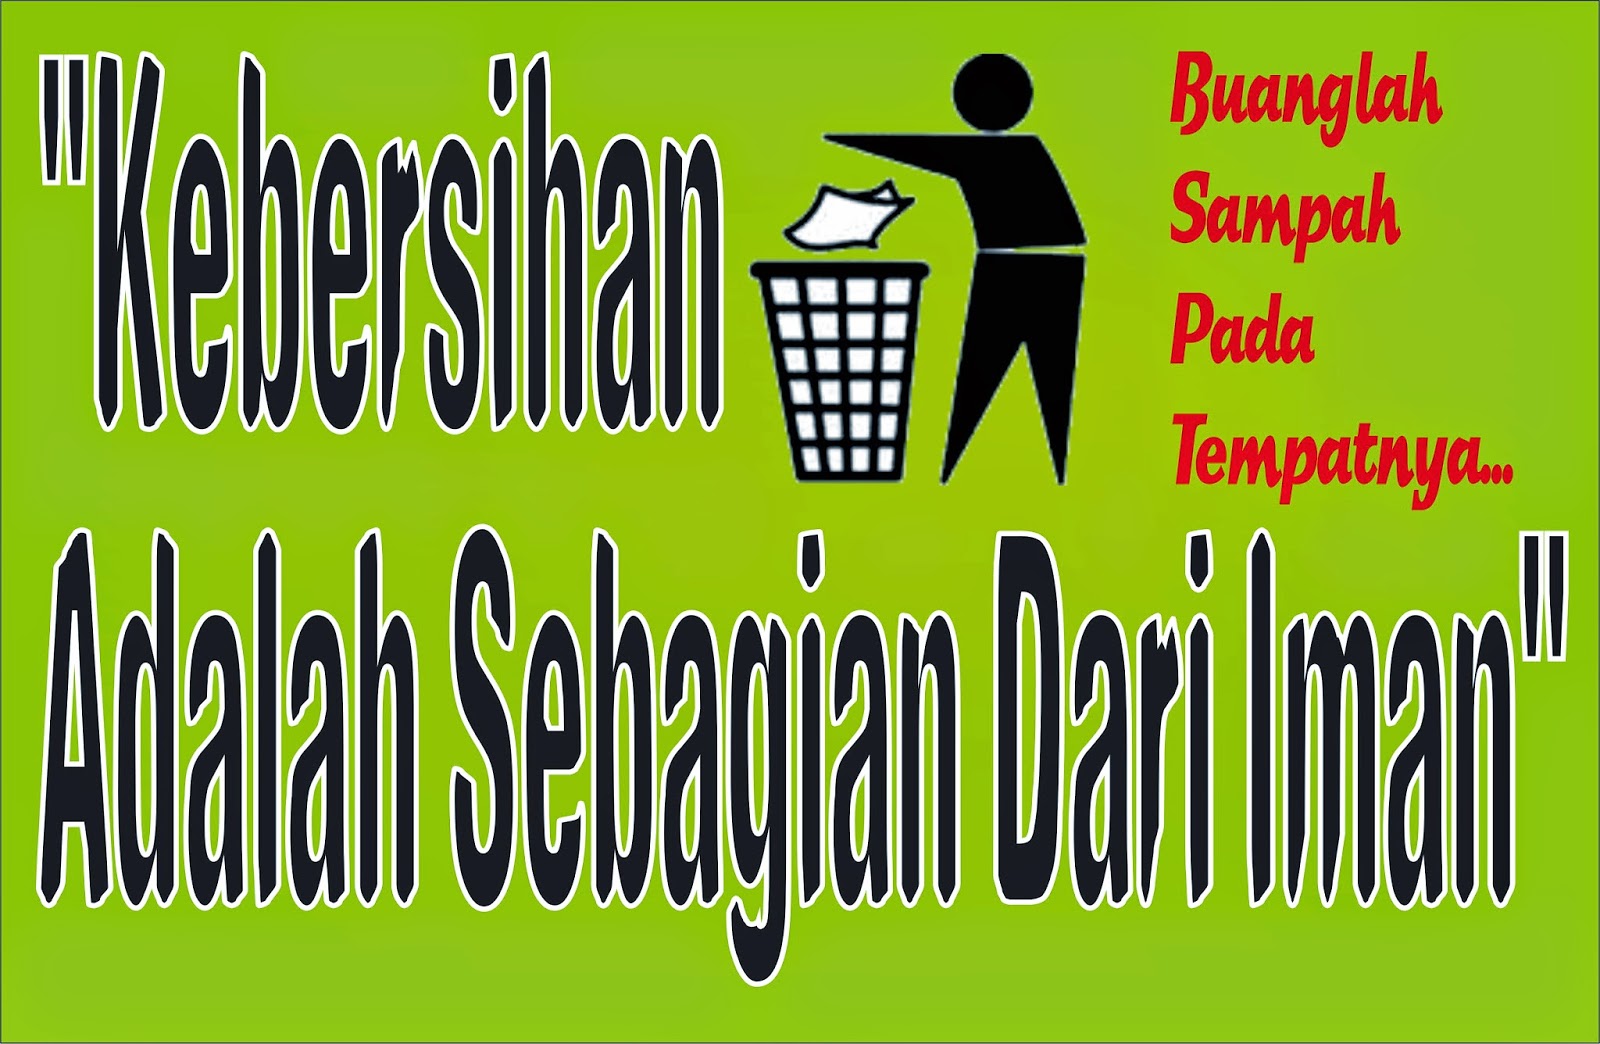 Astuti MI. Muhammadiyah Leuwiliang Slogan Kebersihan